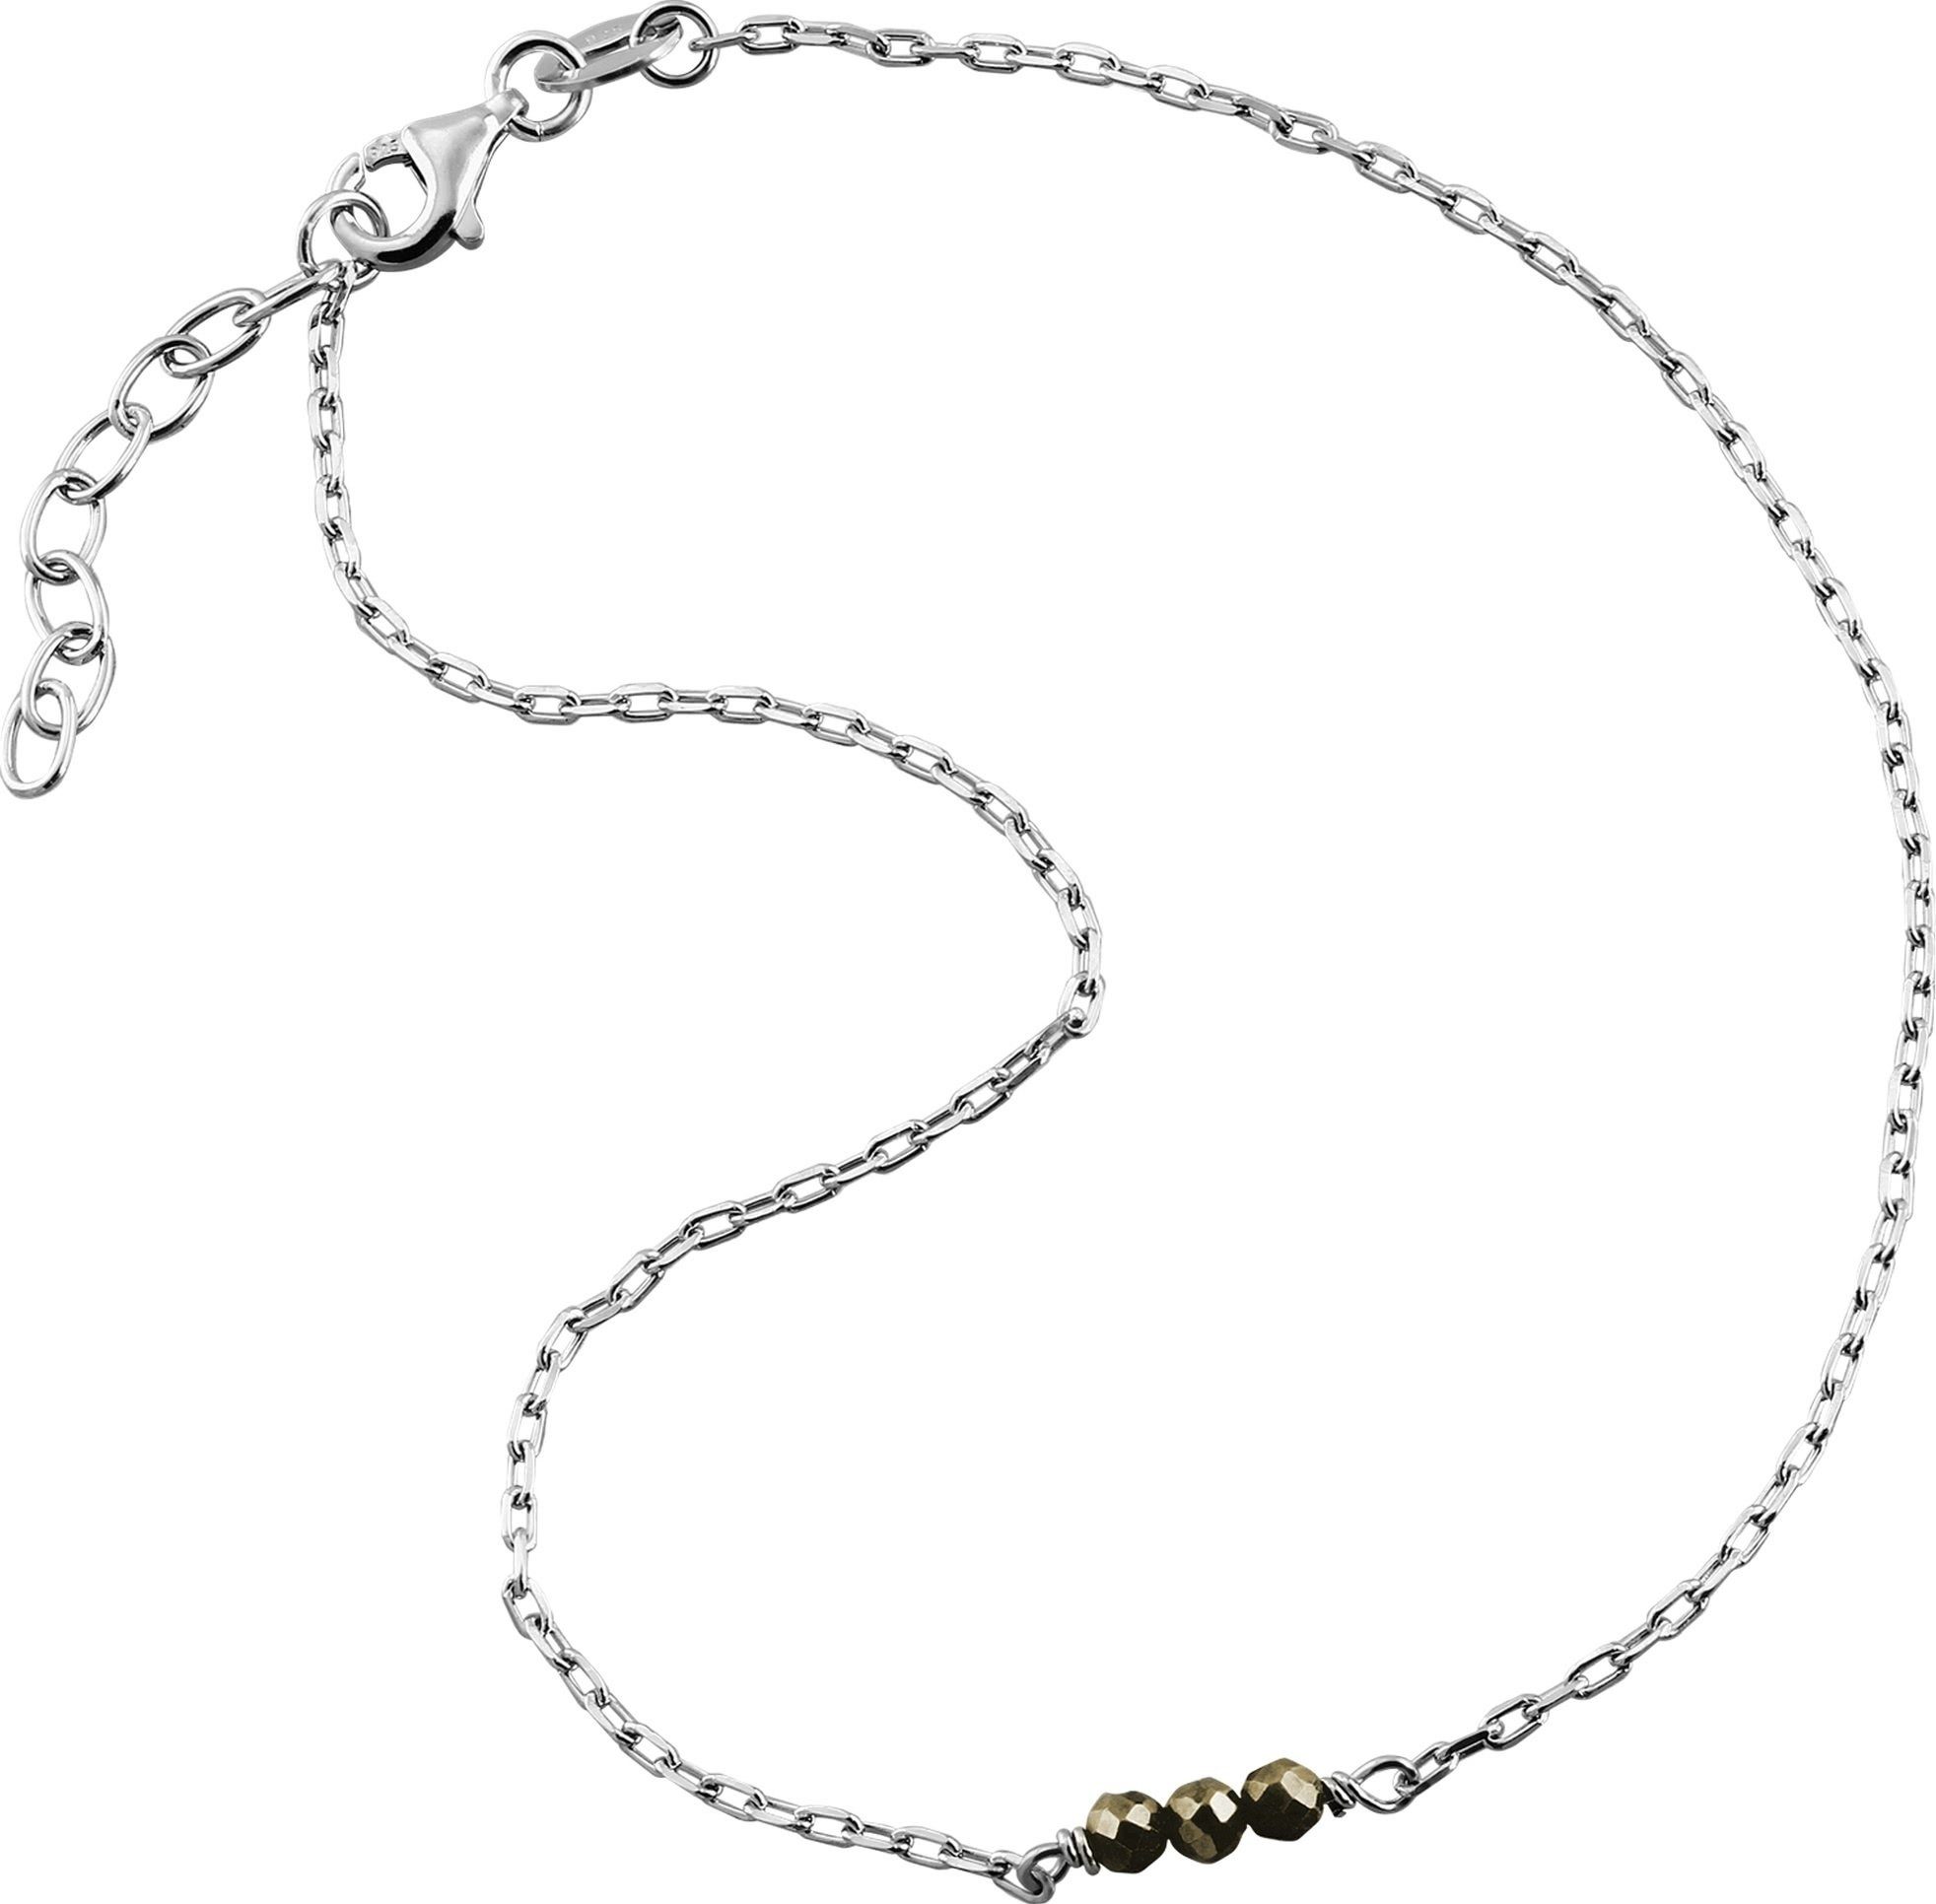 SilberDream Fußkette mit Anhänger SilberDream Perlen Fußkette Damen grau, Damen Fußkette Perlen aus 925 Sterling Silber, Farbe: grau, silber